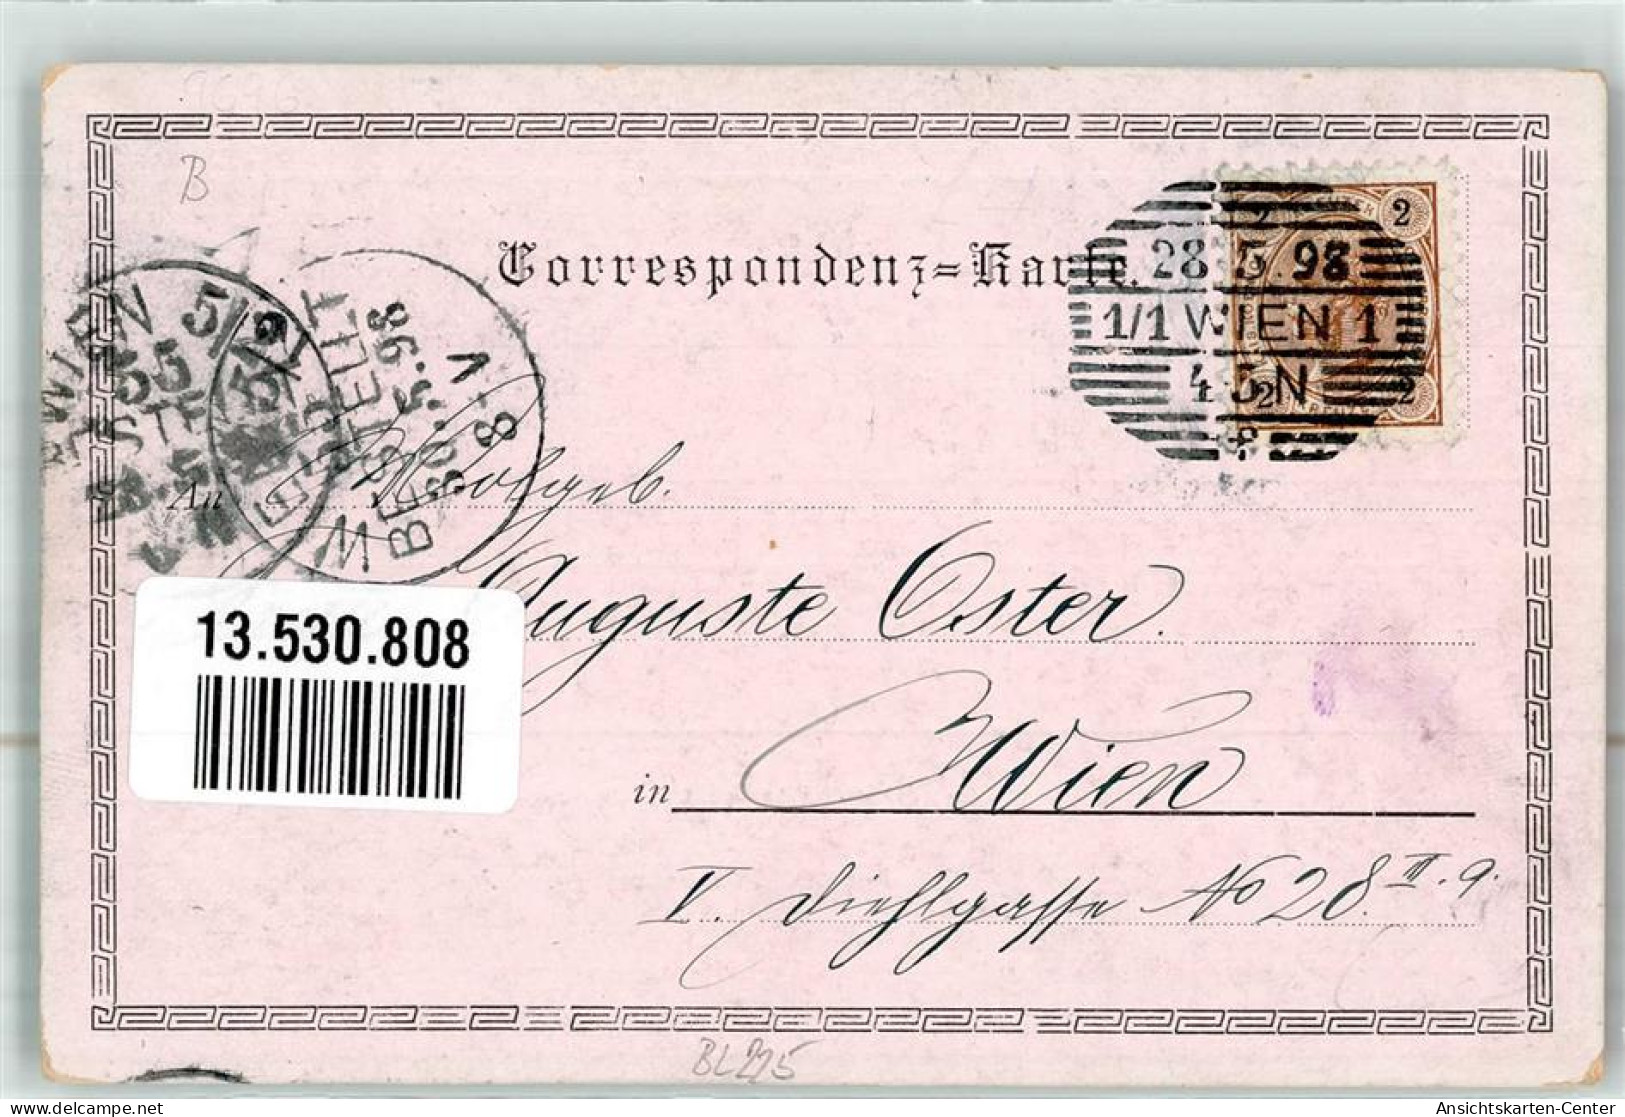 13530808 - Kyselka  Giesshuebel-Sauerbrunn - Czech Republic